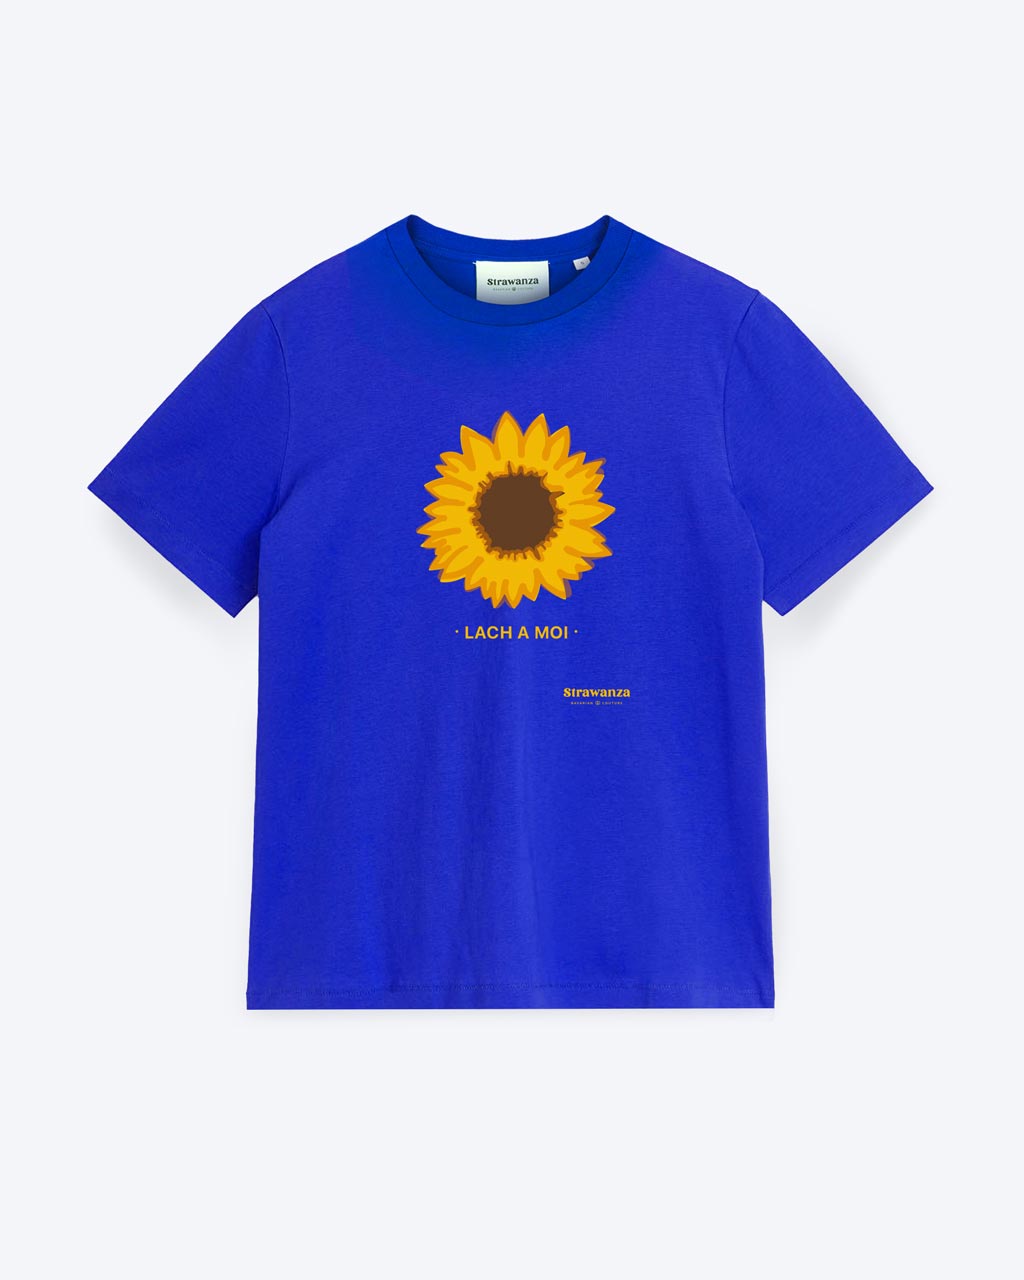 Ein blaues T-Shirt mit einer Sonnenblume als Motiv und darunter ein gelber "LACH A MOI" Schriftzug. 